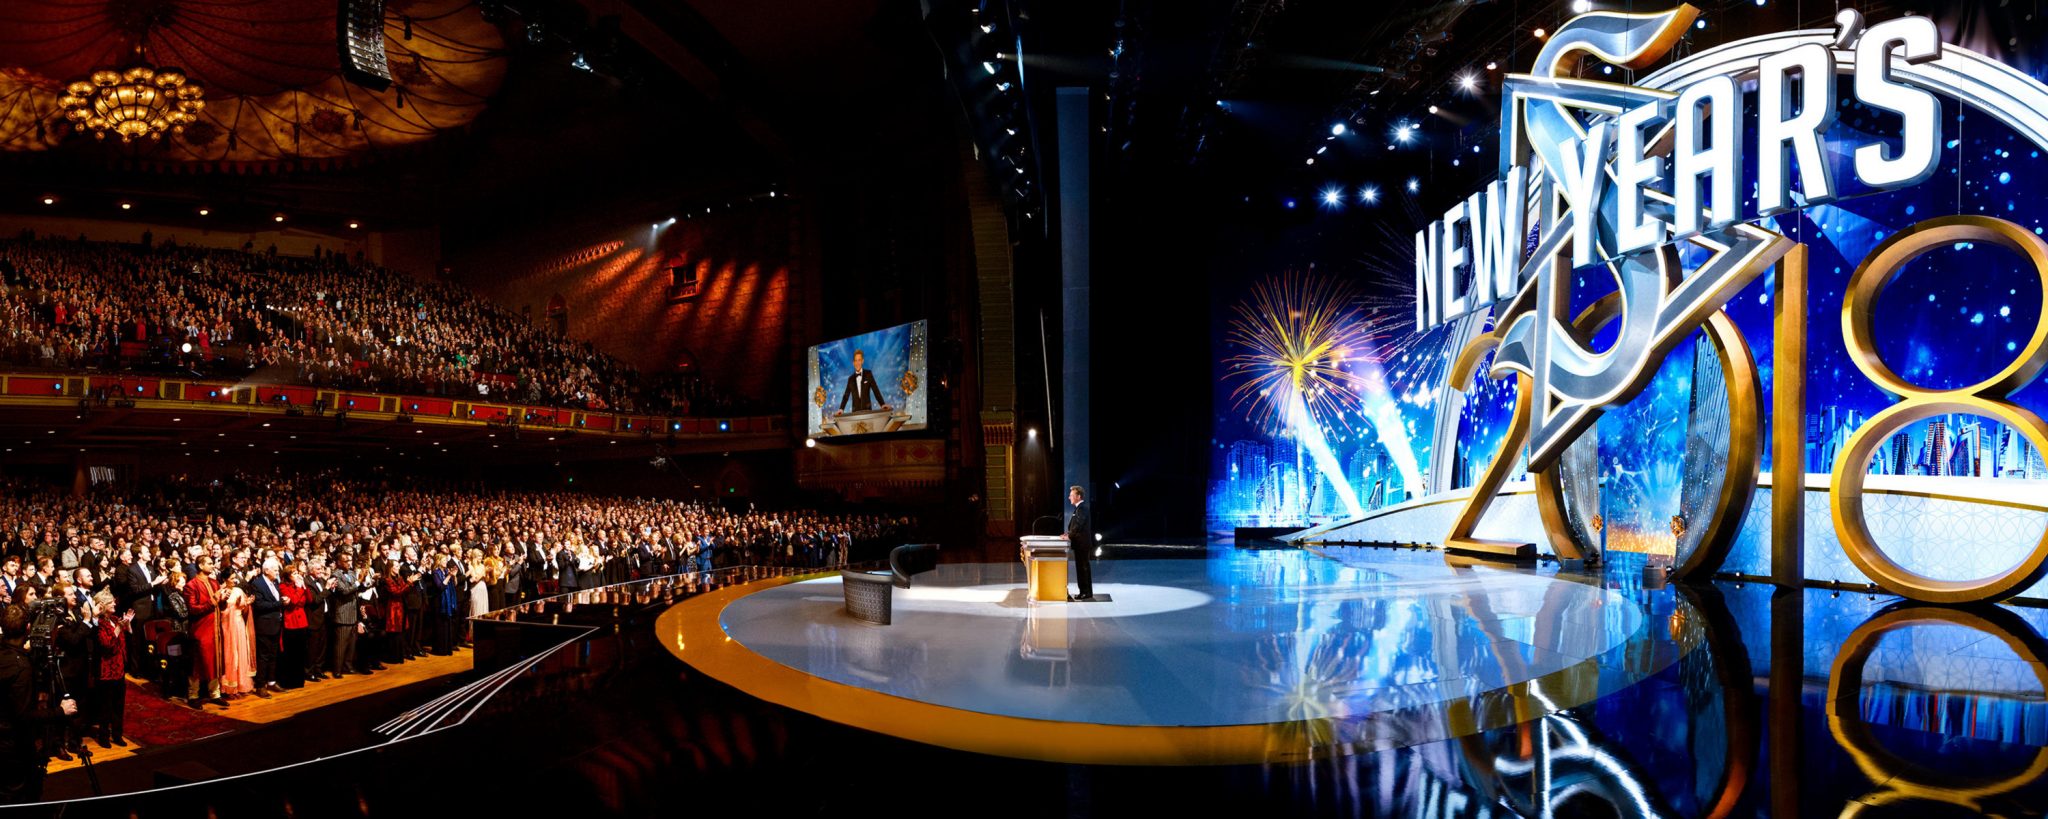 La Scientologie rend hommage à une année de croissance et célèbre la Nouvelle Année